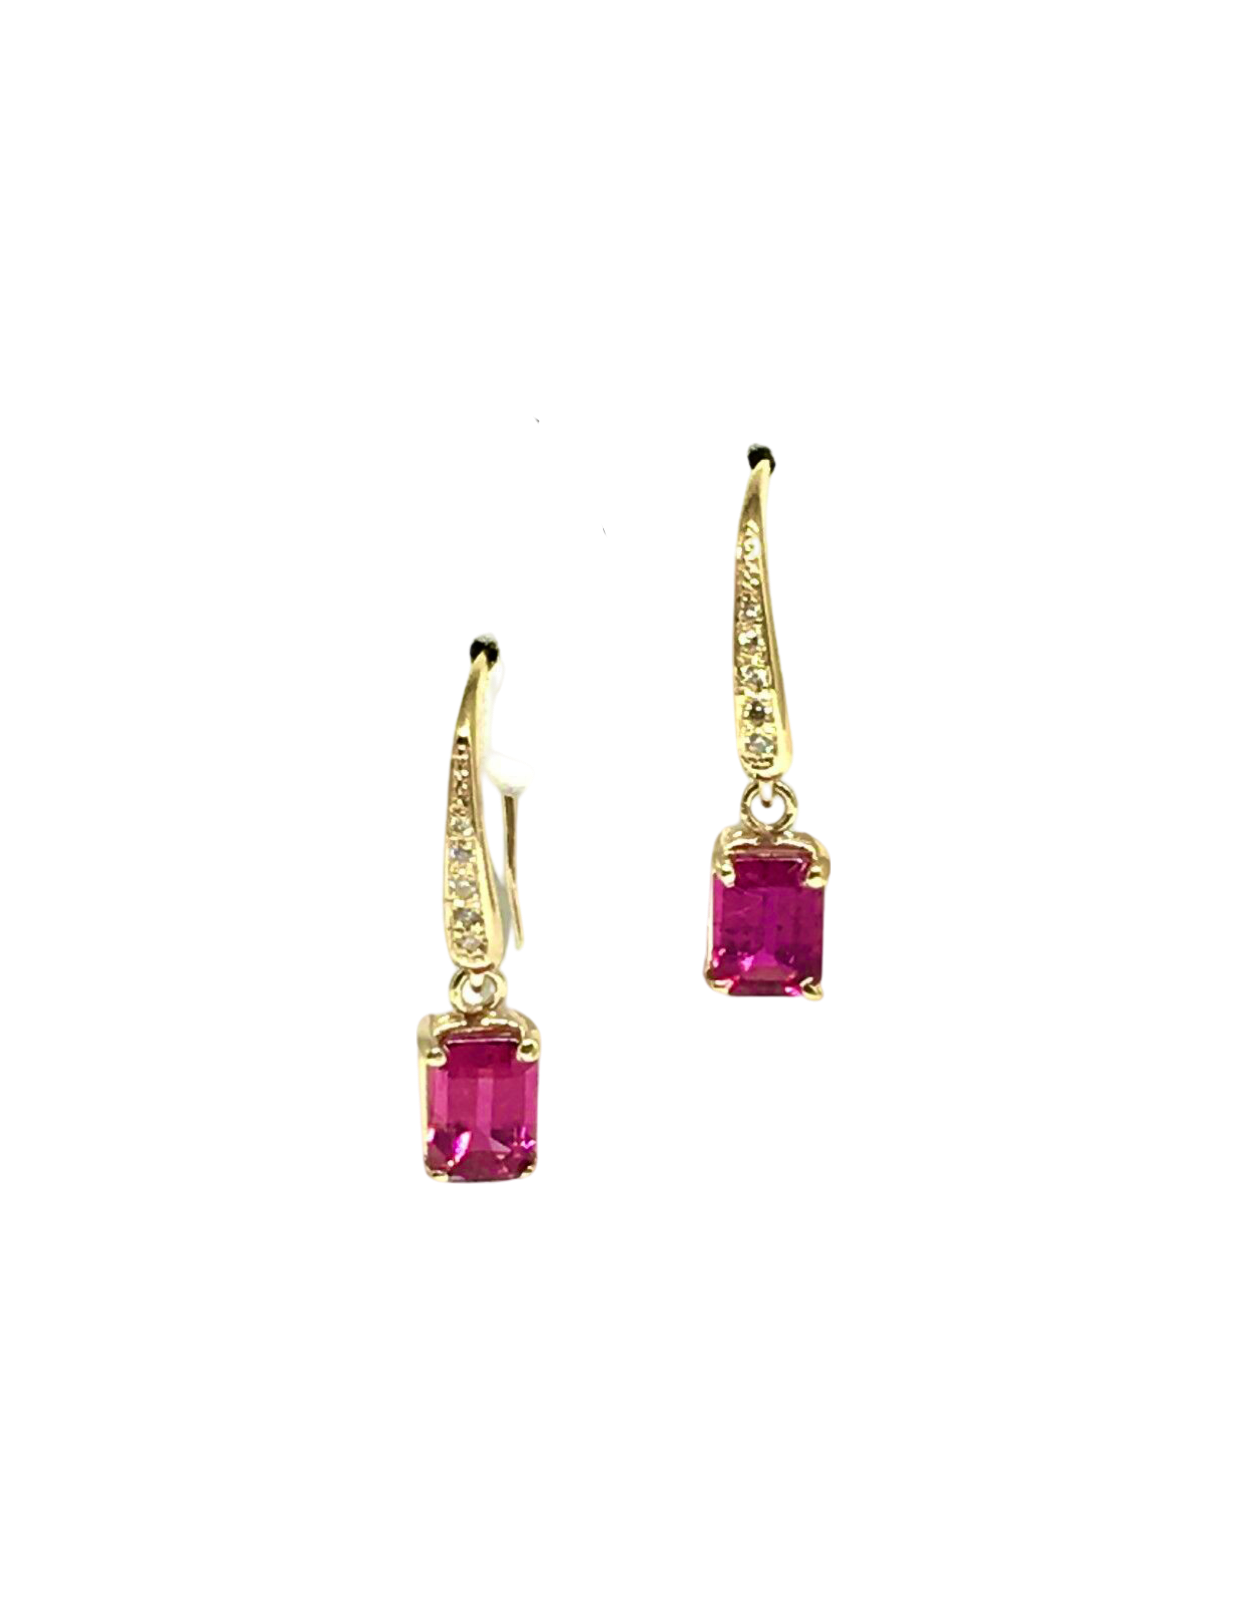 Diamond Rubellite Tourmaline Earrings 14k Gold 2.05 TCW Certified $1,690 821770 - Certified Fine Jewelry